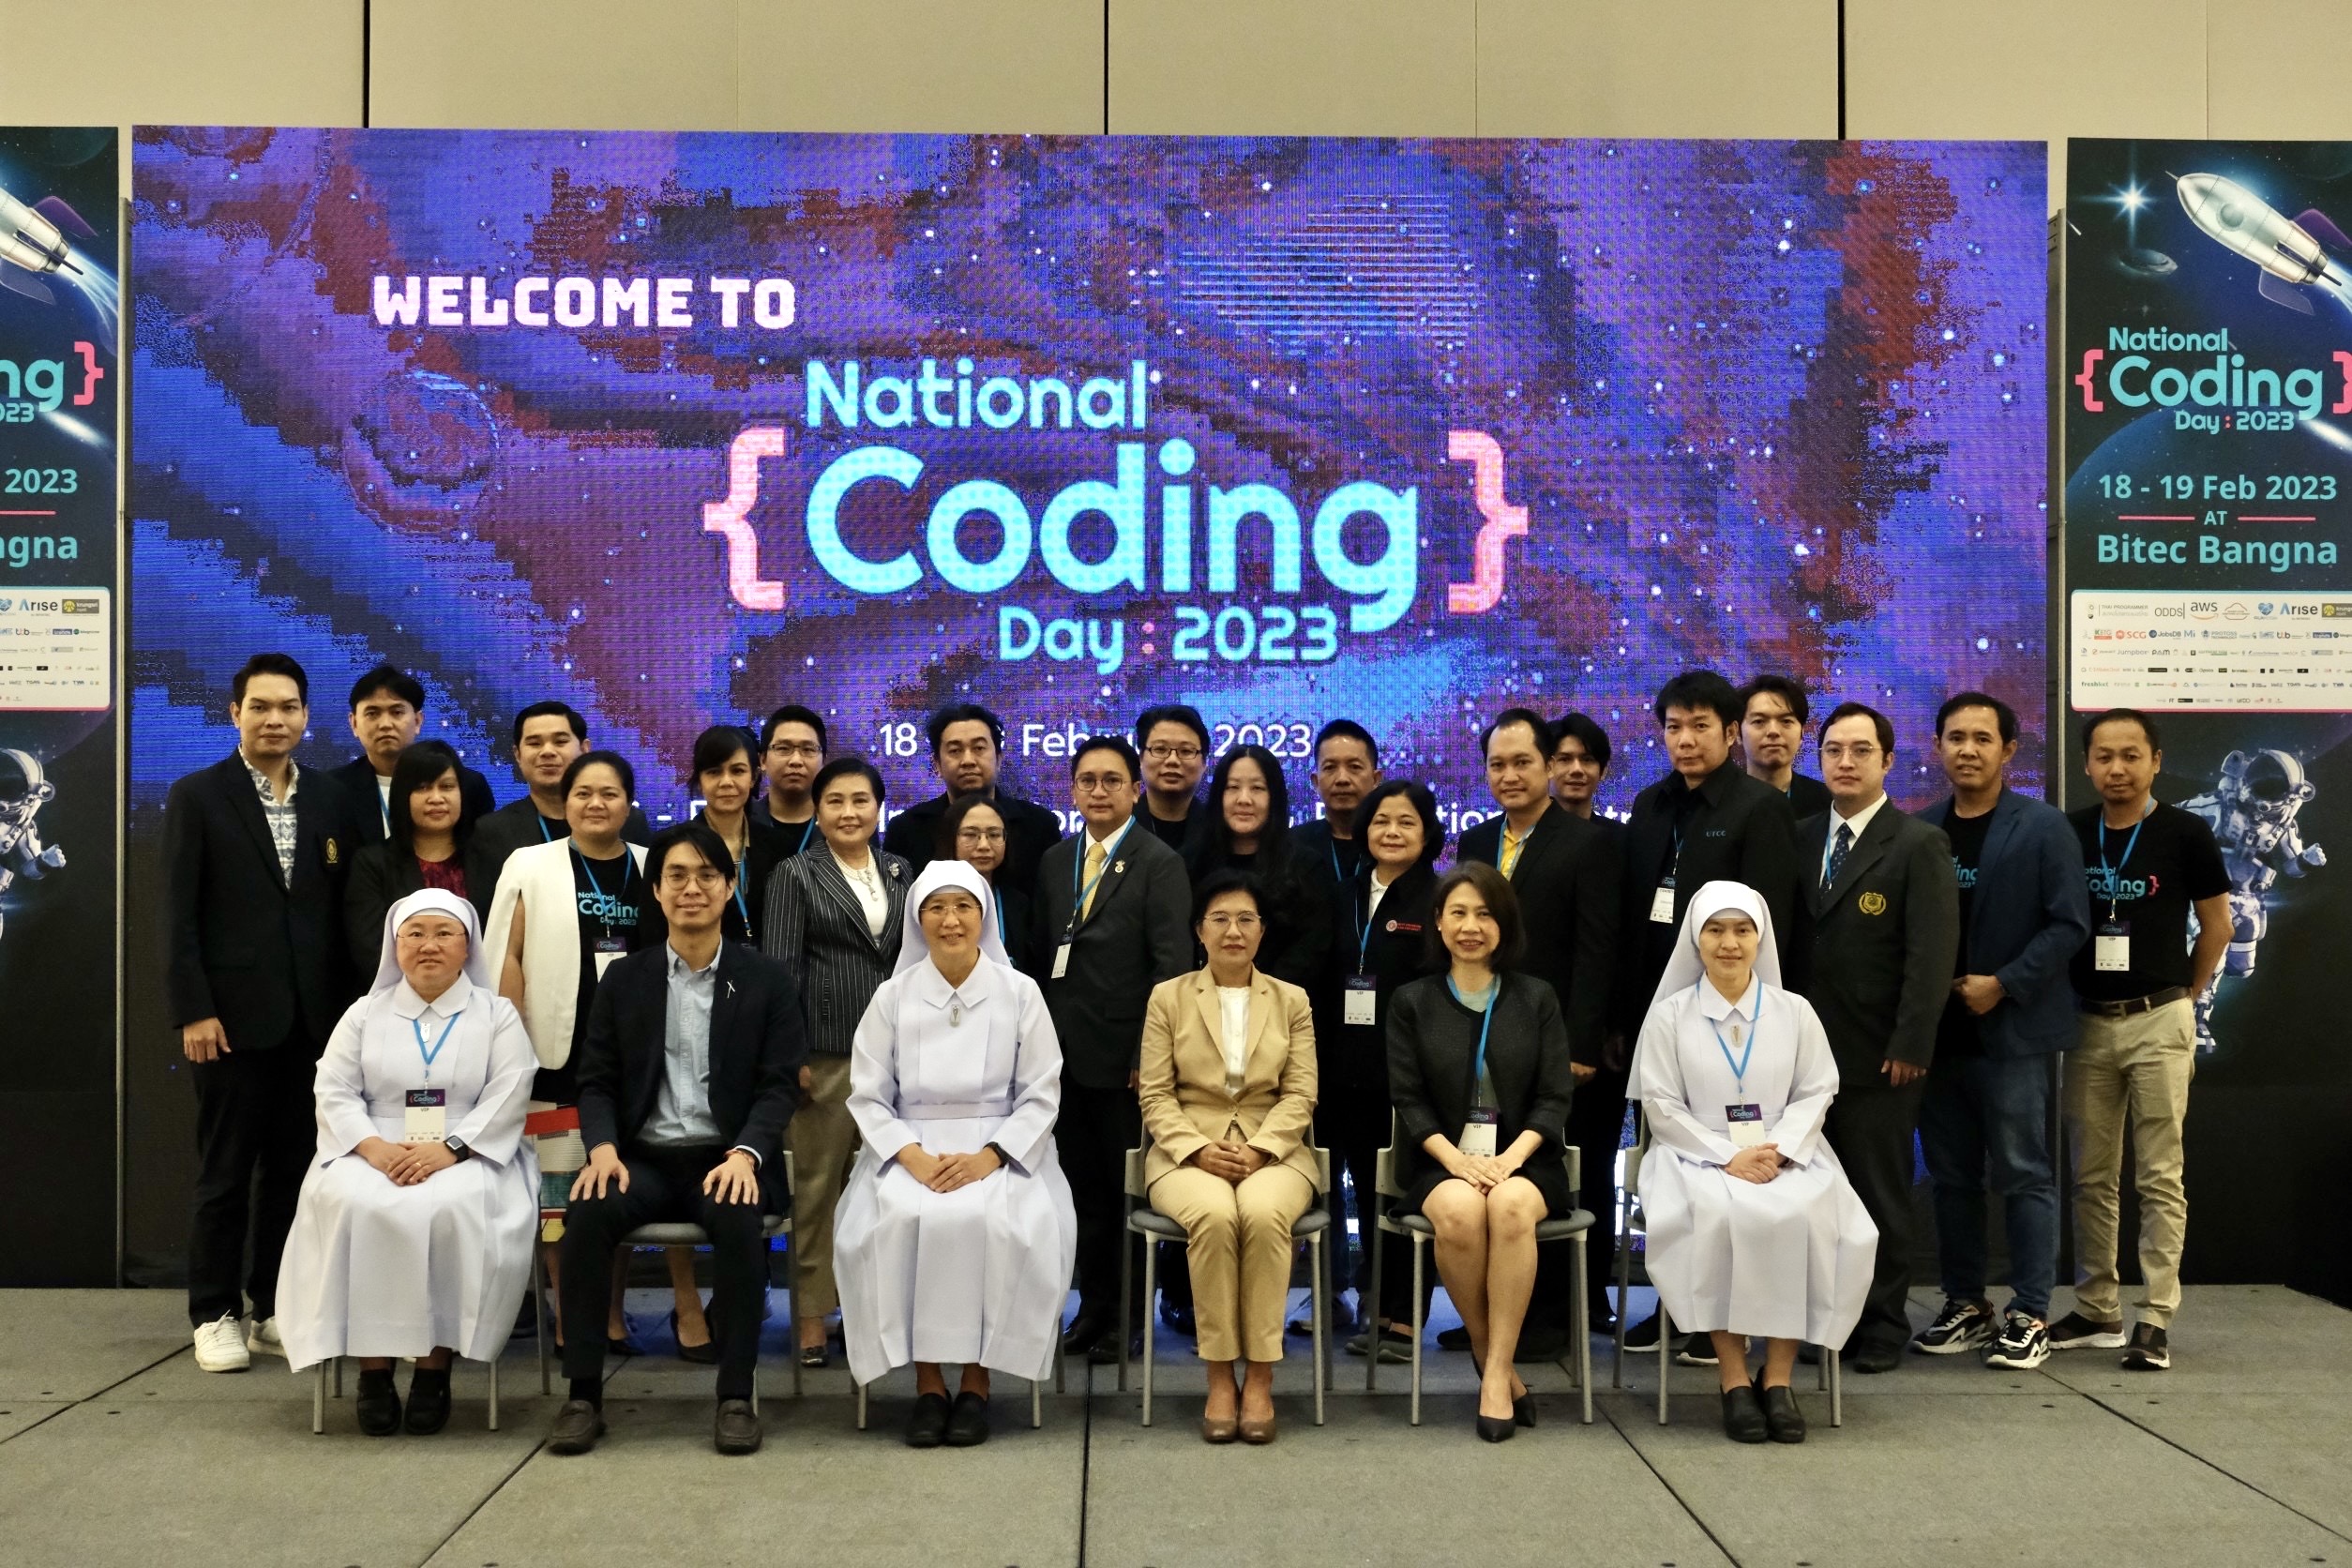 จบลงไปแล้วกับตำนานบทใหม่ของชาวโปรแกรมเมอร์ไทย กับงาน “National Coding Day 2023” งาน Tech ที่ใหญ่ที่สุดในประเทศไทย